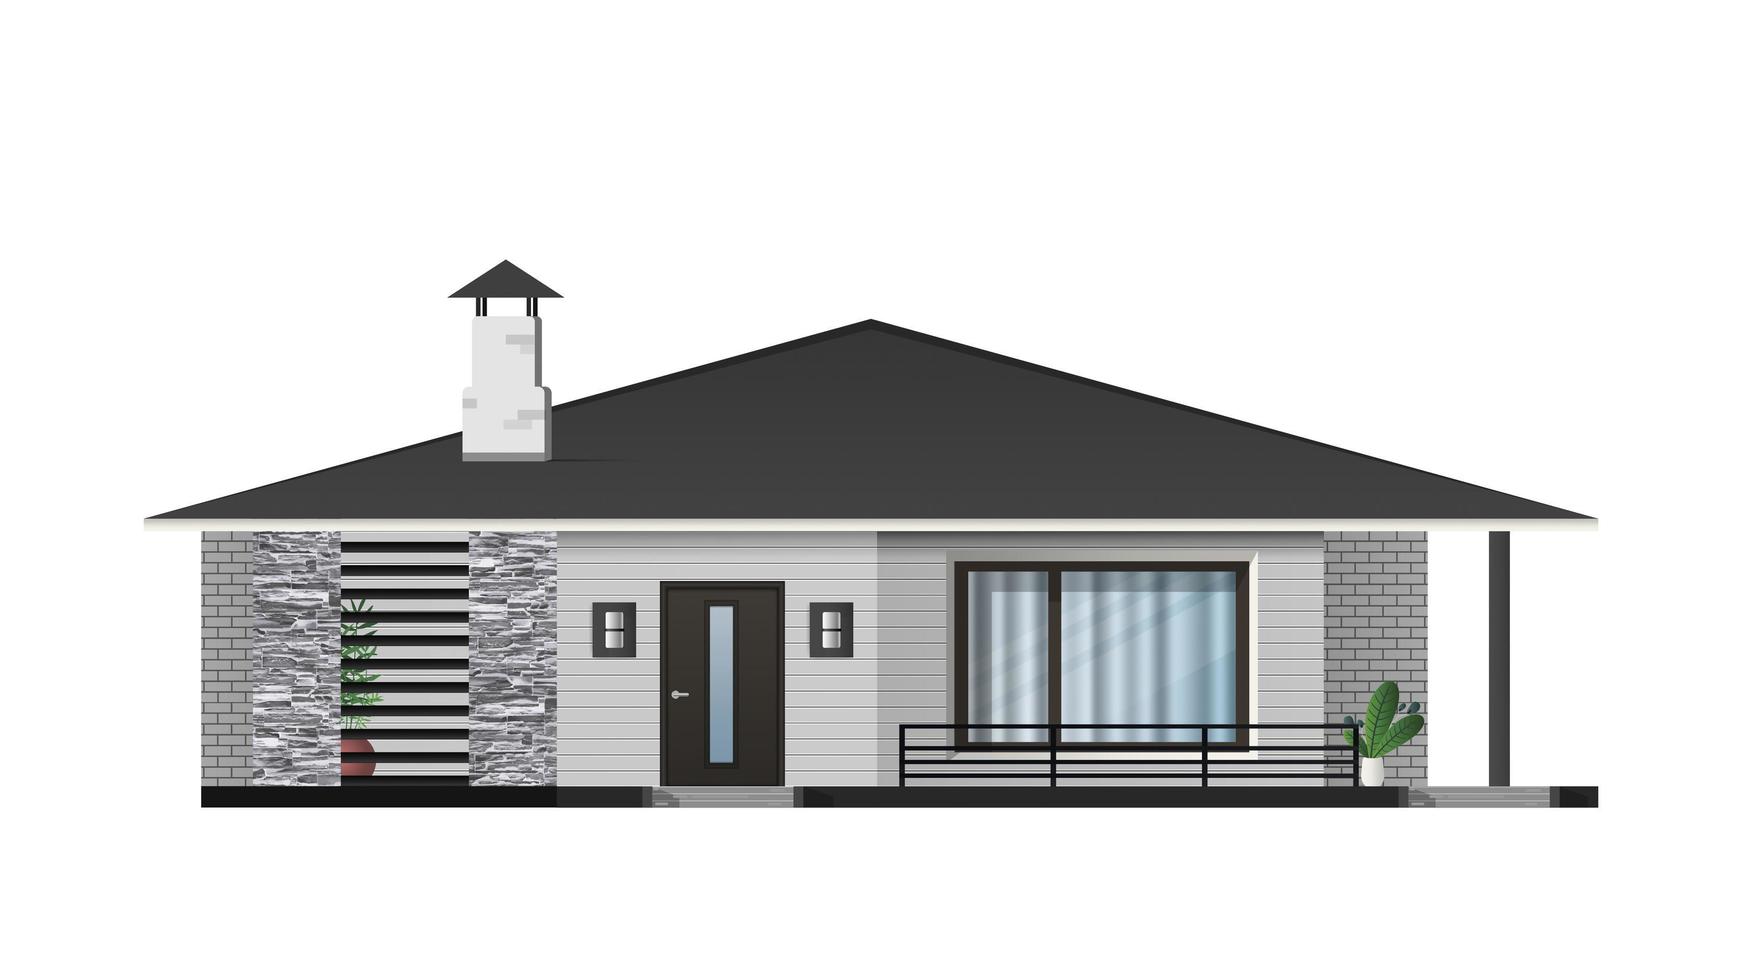 villa realistica isolata su sfondo bianco. casa in stile loft moderno ed elegante. illustrazione vettoriale